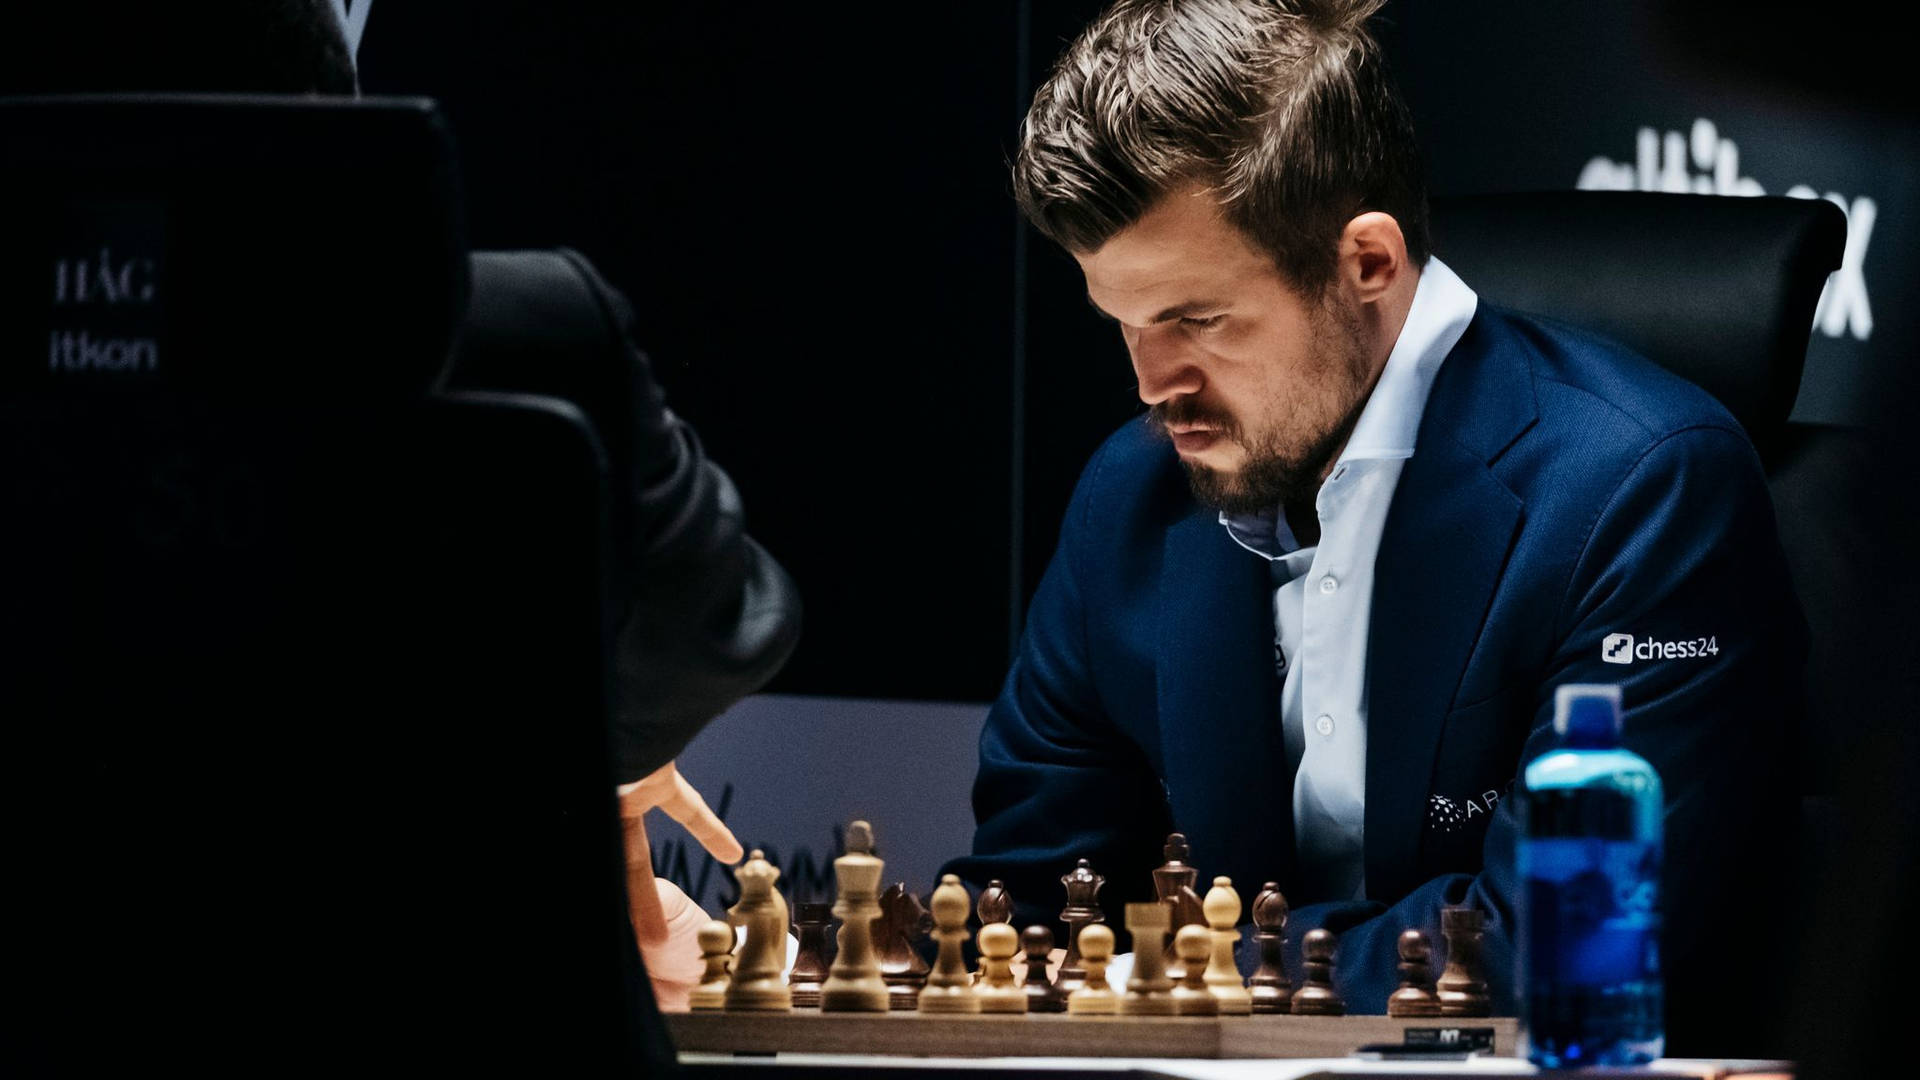 Magnus Carlsen In A Chess Match Wallpaper